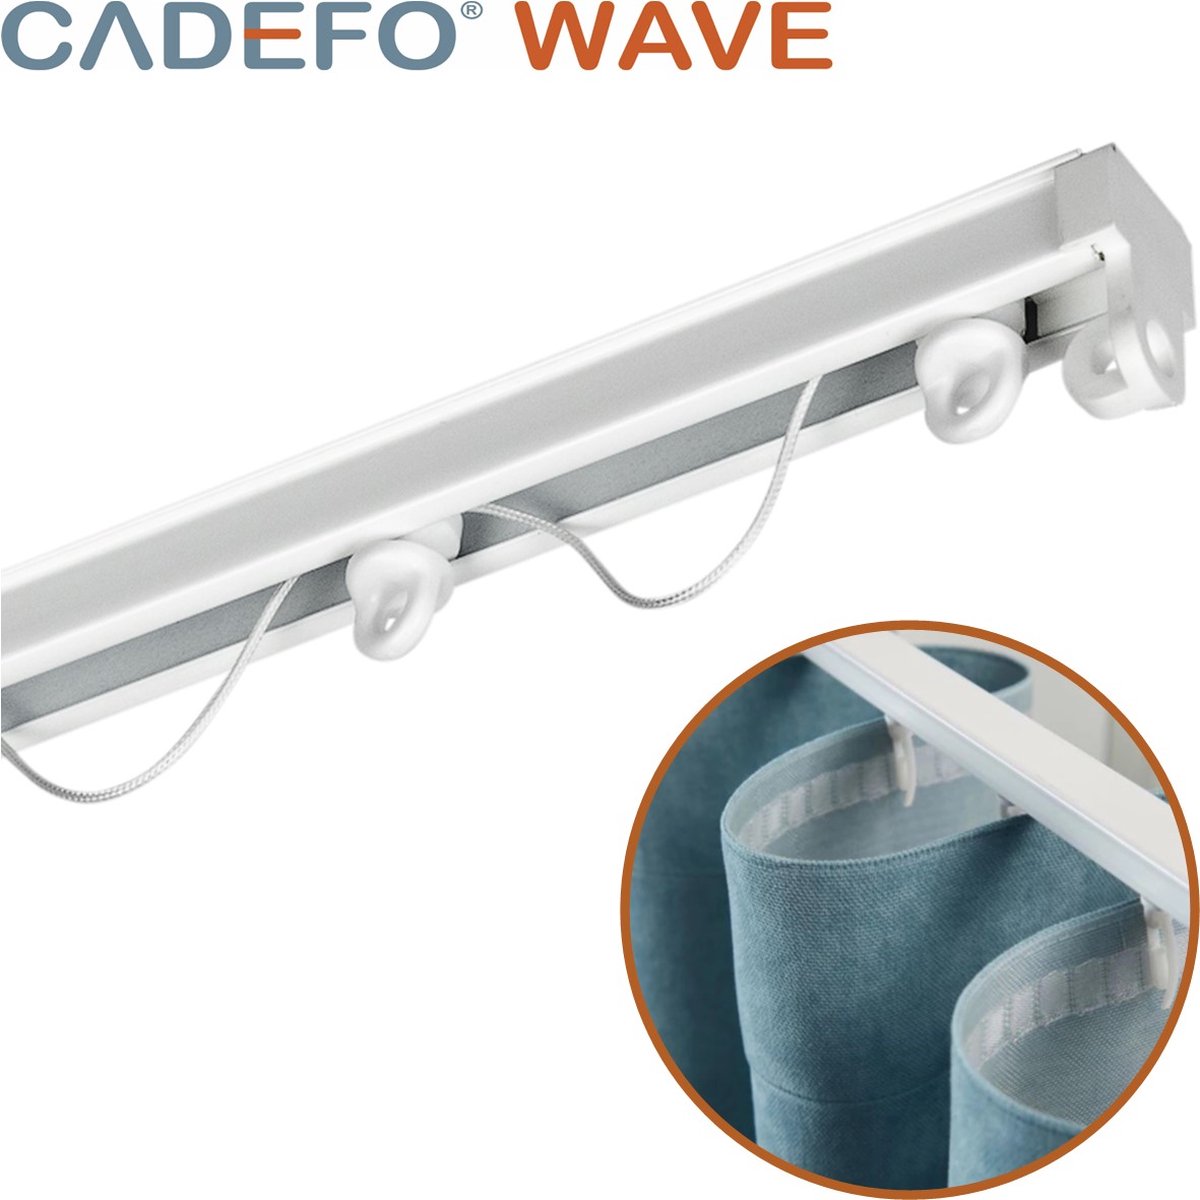 CADEFO WAVE (351 - 400 cm) Gordijnrails - Compleet op maat! - UIT 1 STUK - Leverbaar tot 6 meter - Plafondbevestiging - Lengte 395 cm